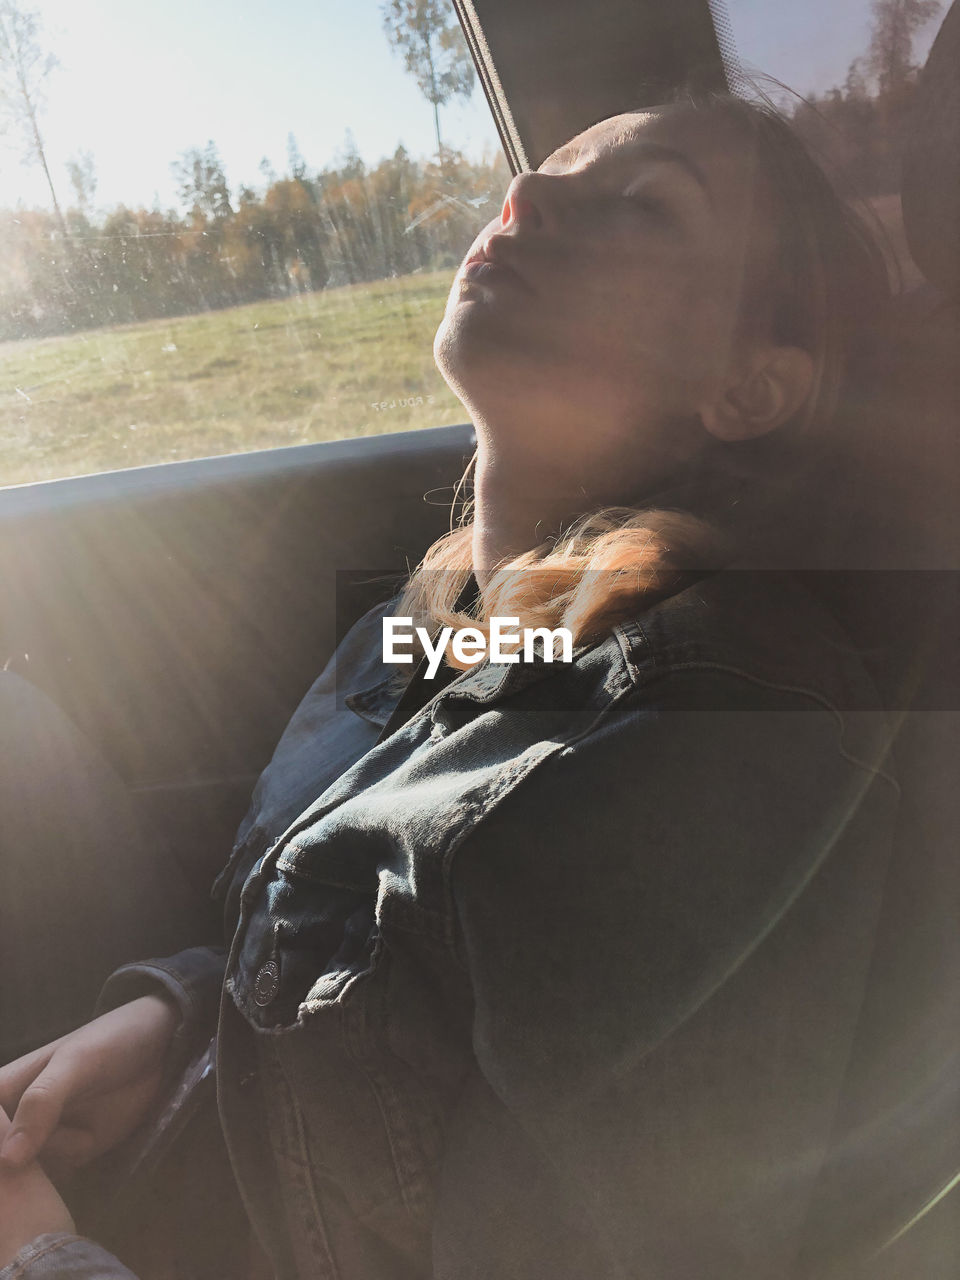 Teenage girl sleeping in car